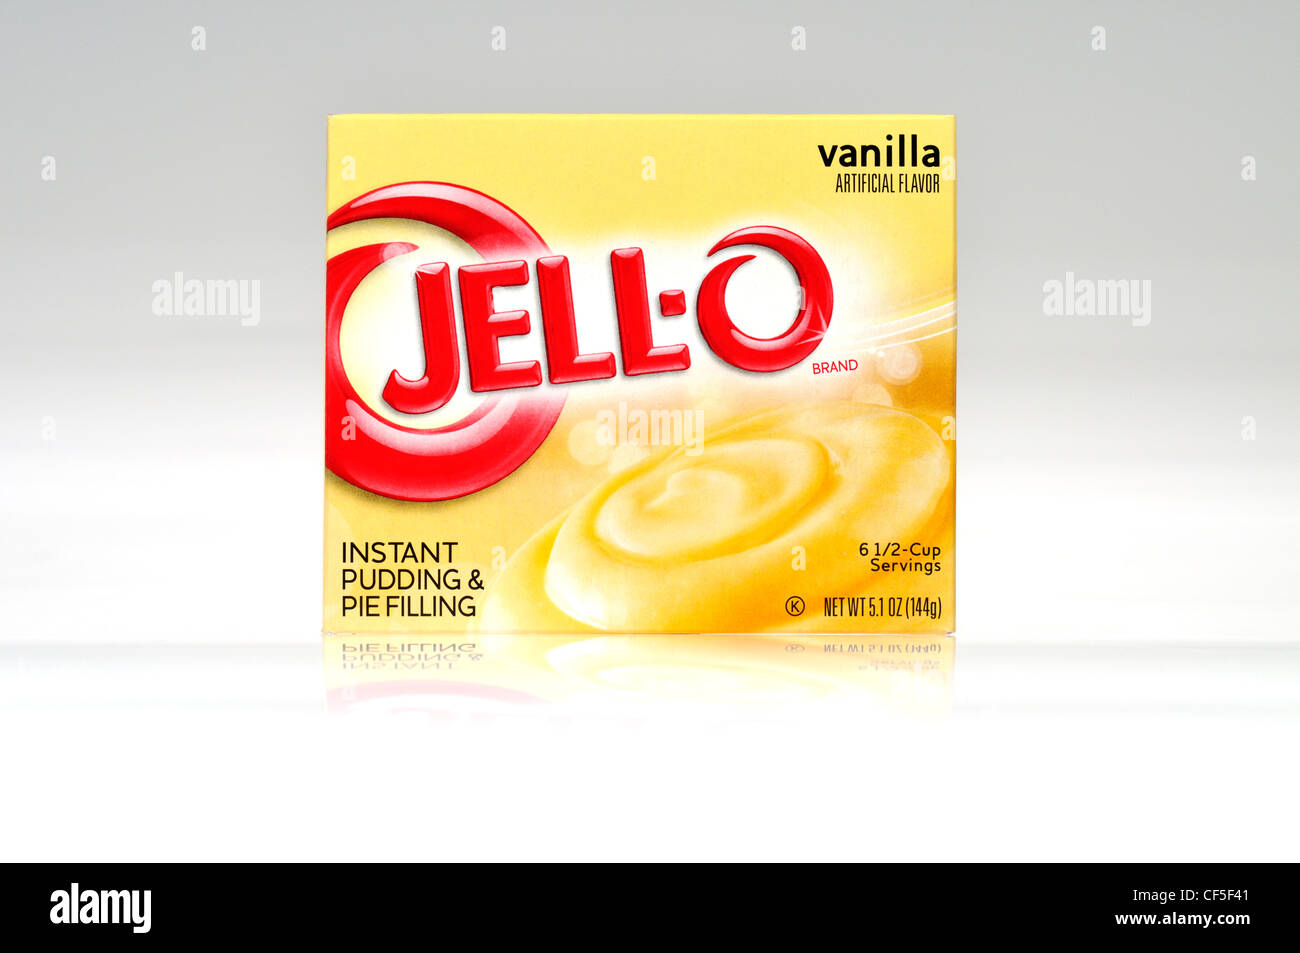 Un pacchetto di jella o jell-o budini istantanei e torta il riempimento di aroma vaniglia su sfondo bianco tagliato fuori degli Stati Uniti. Foto Stock